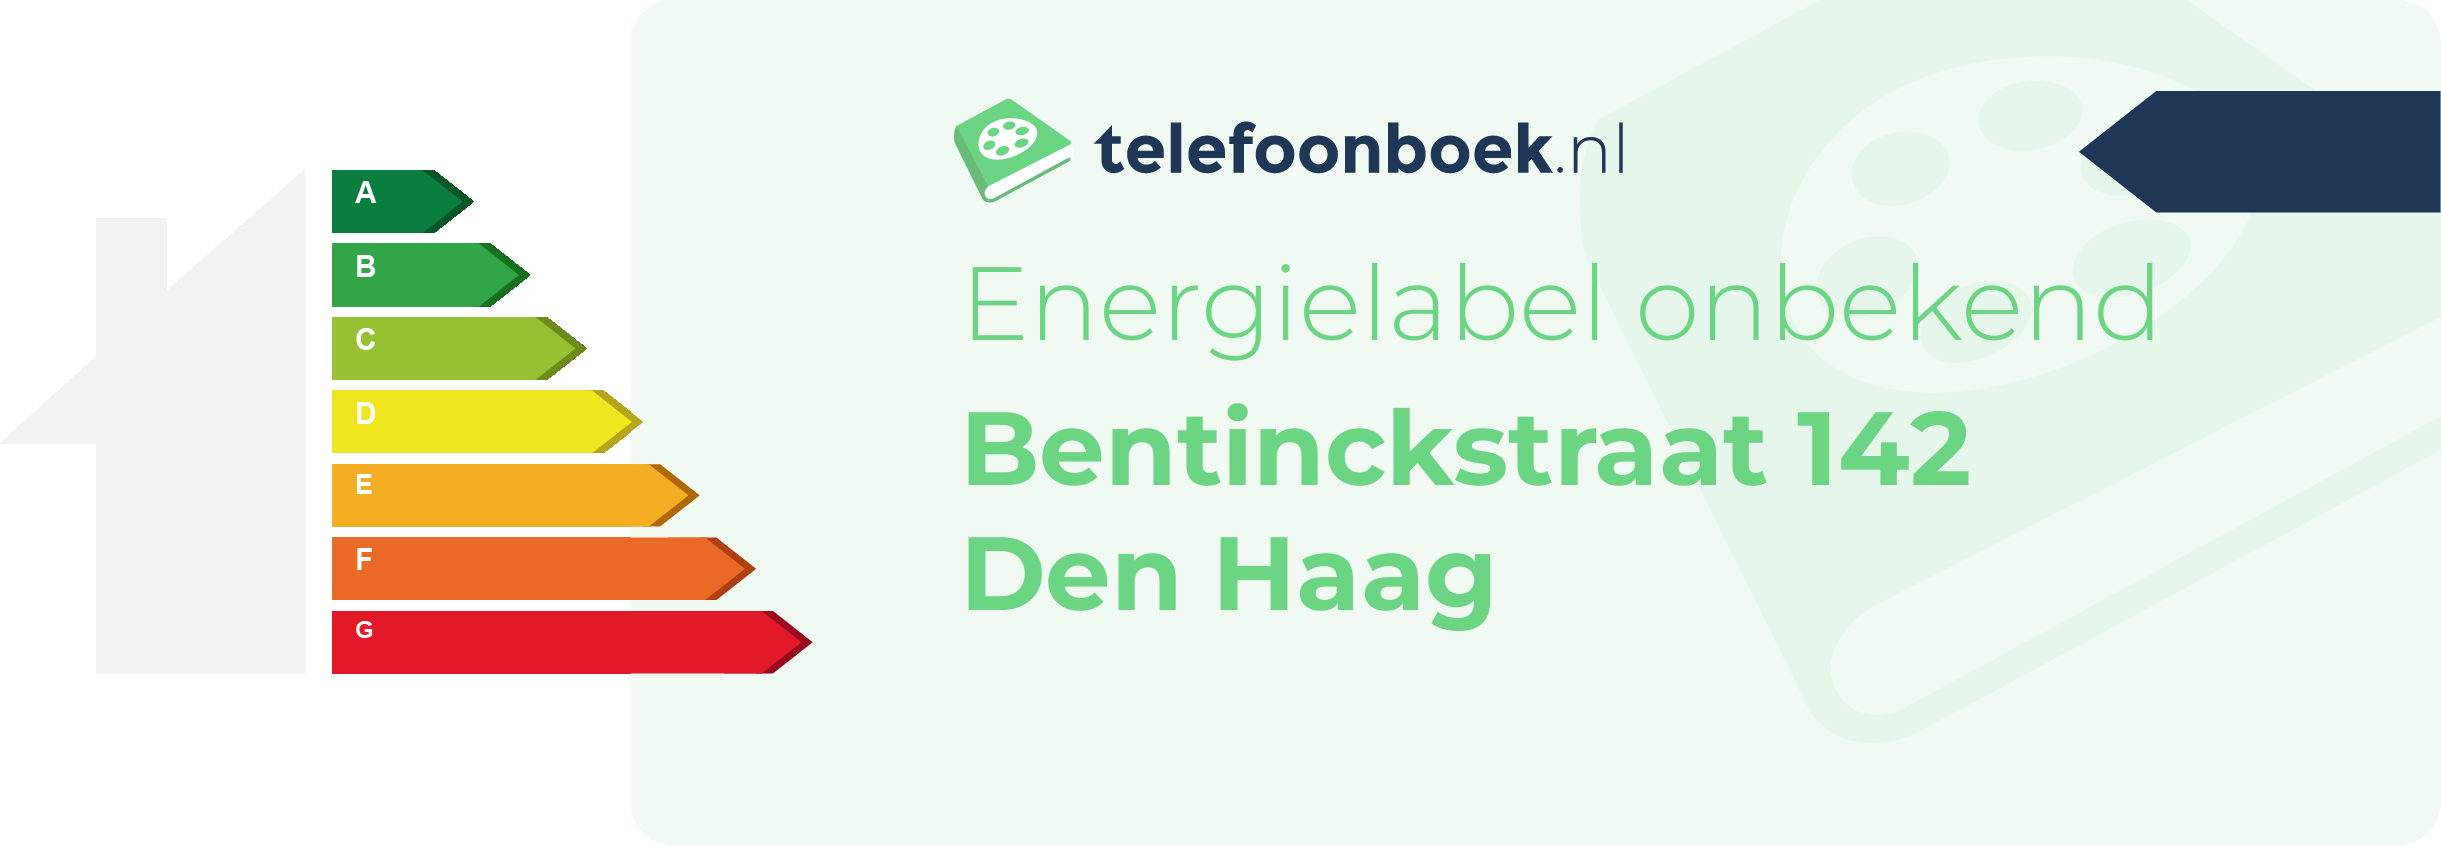 Energielabel Bentinckstraat 142 Den Haag